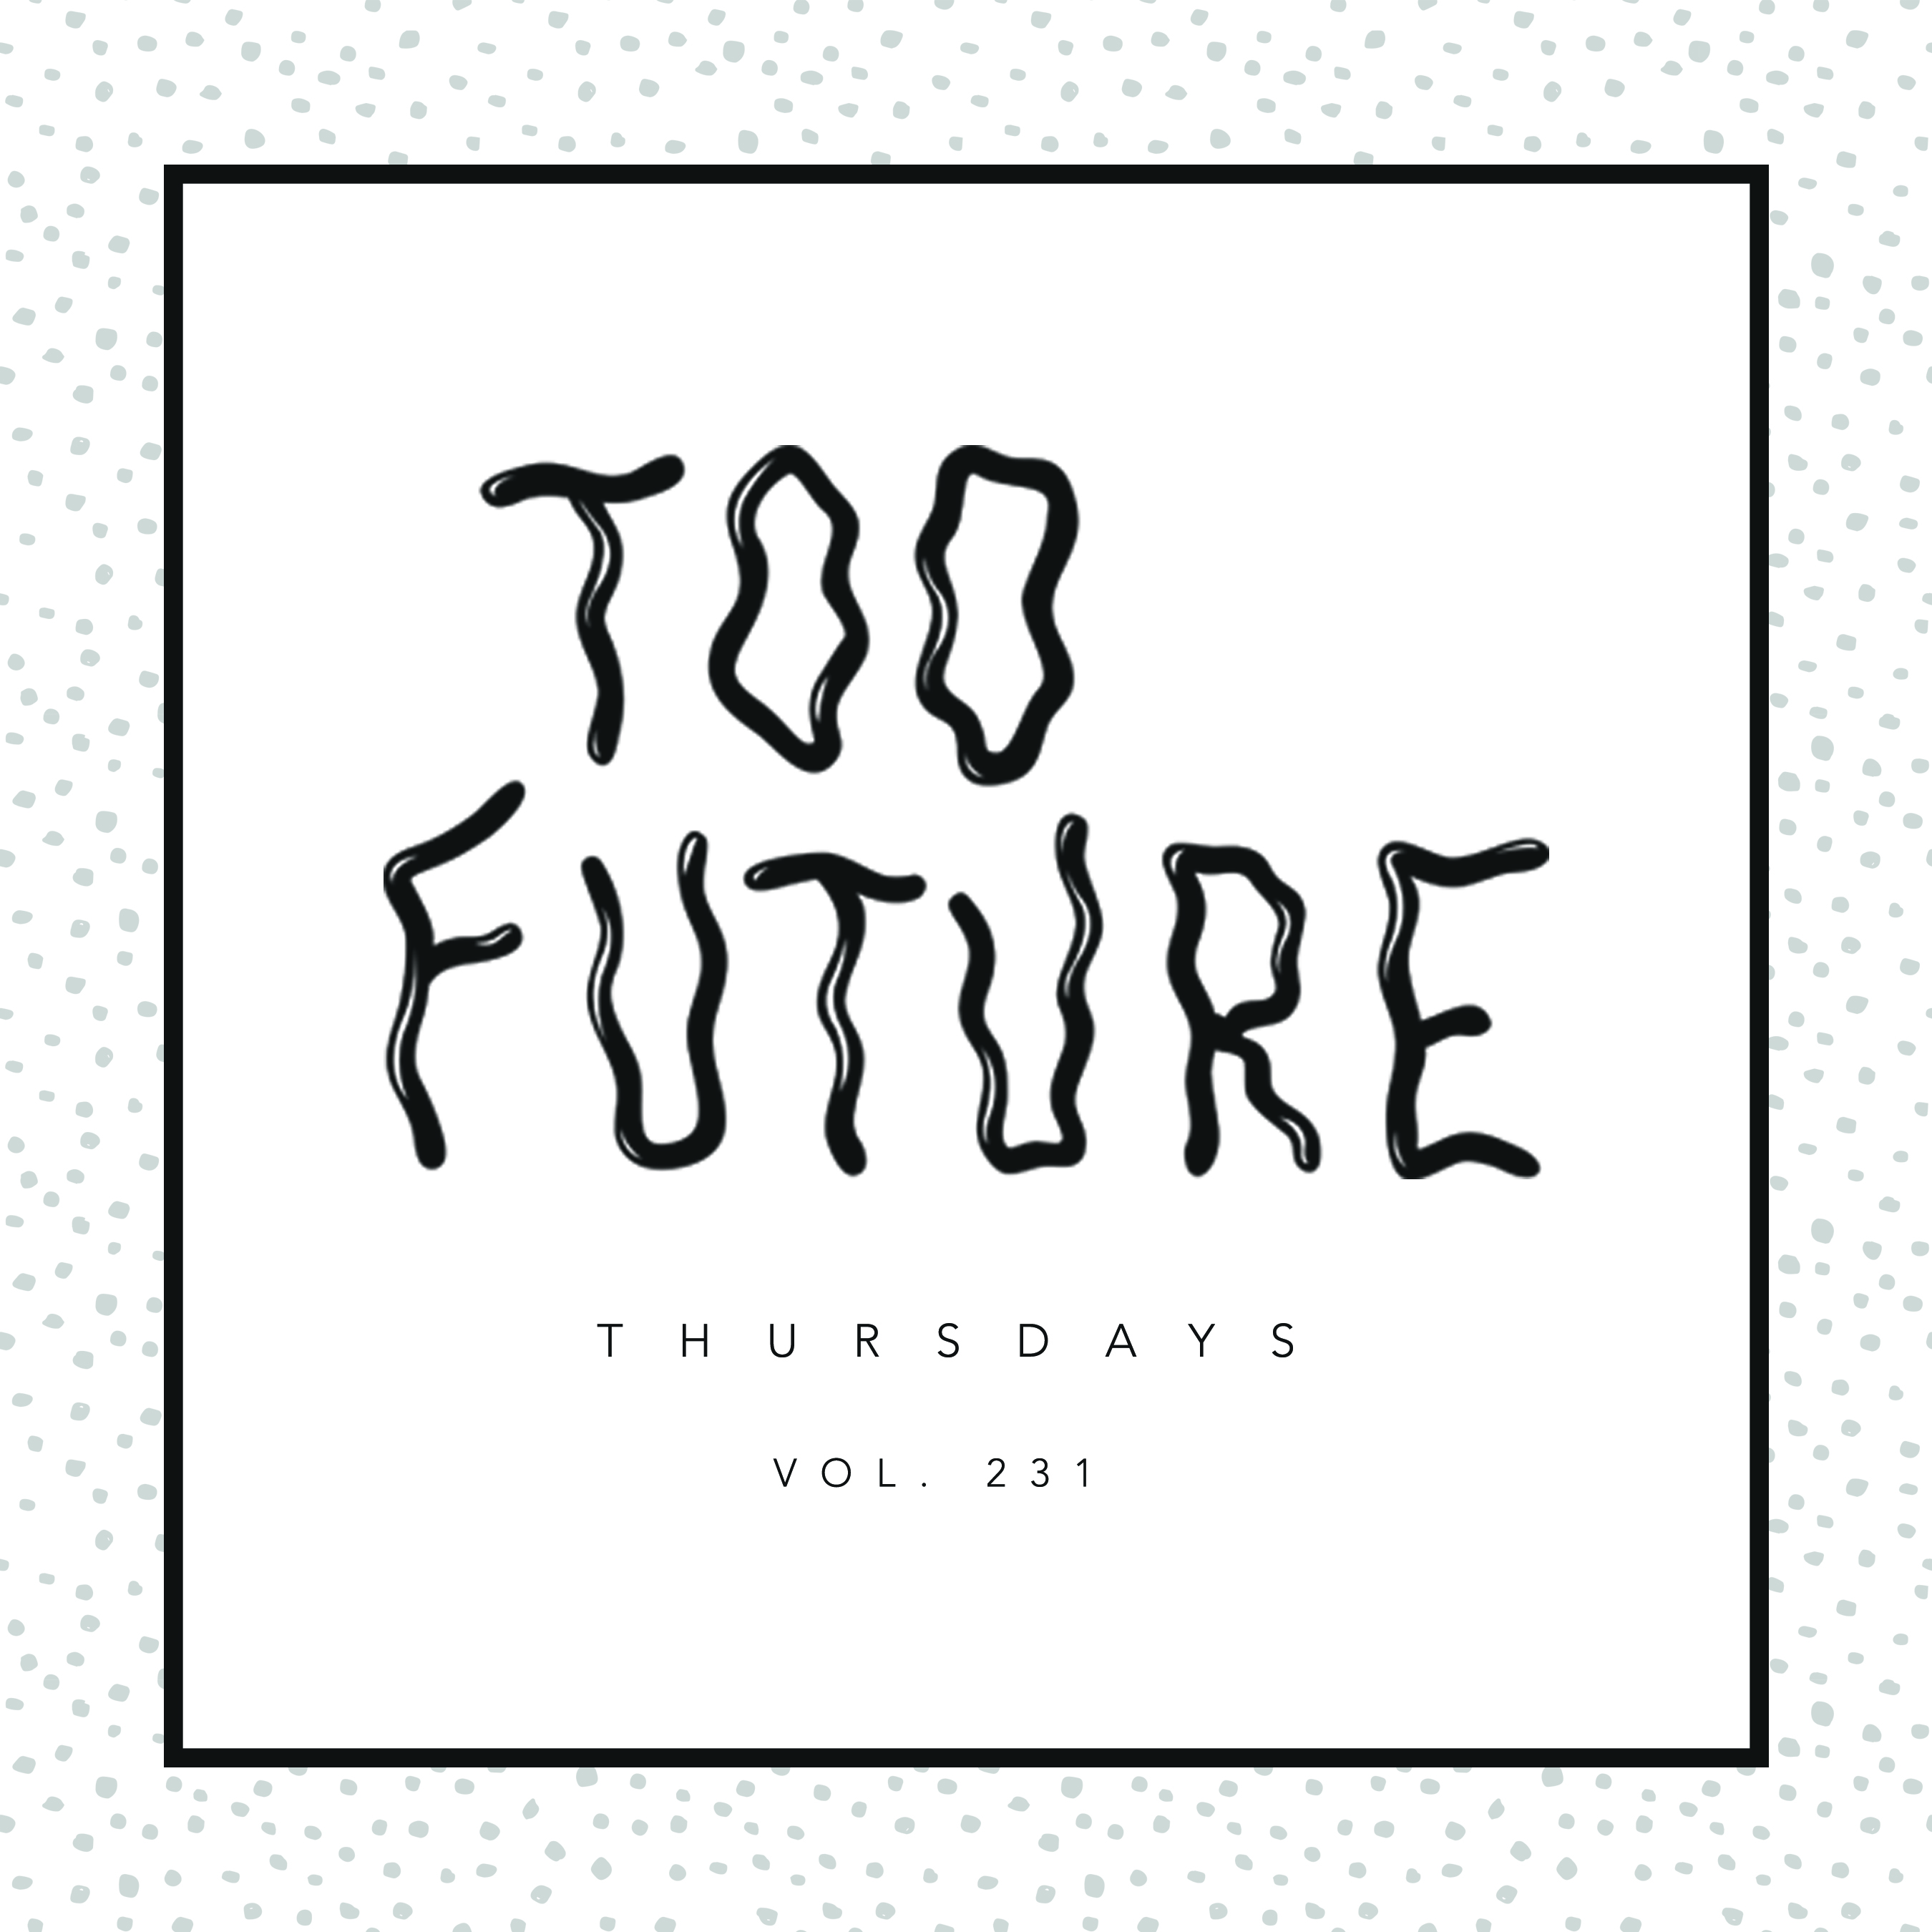 too-future-thursdays-vol-231